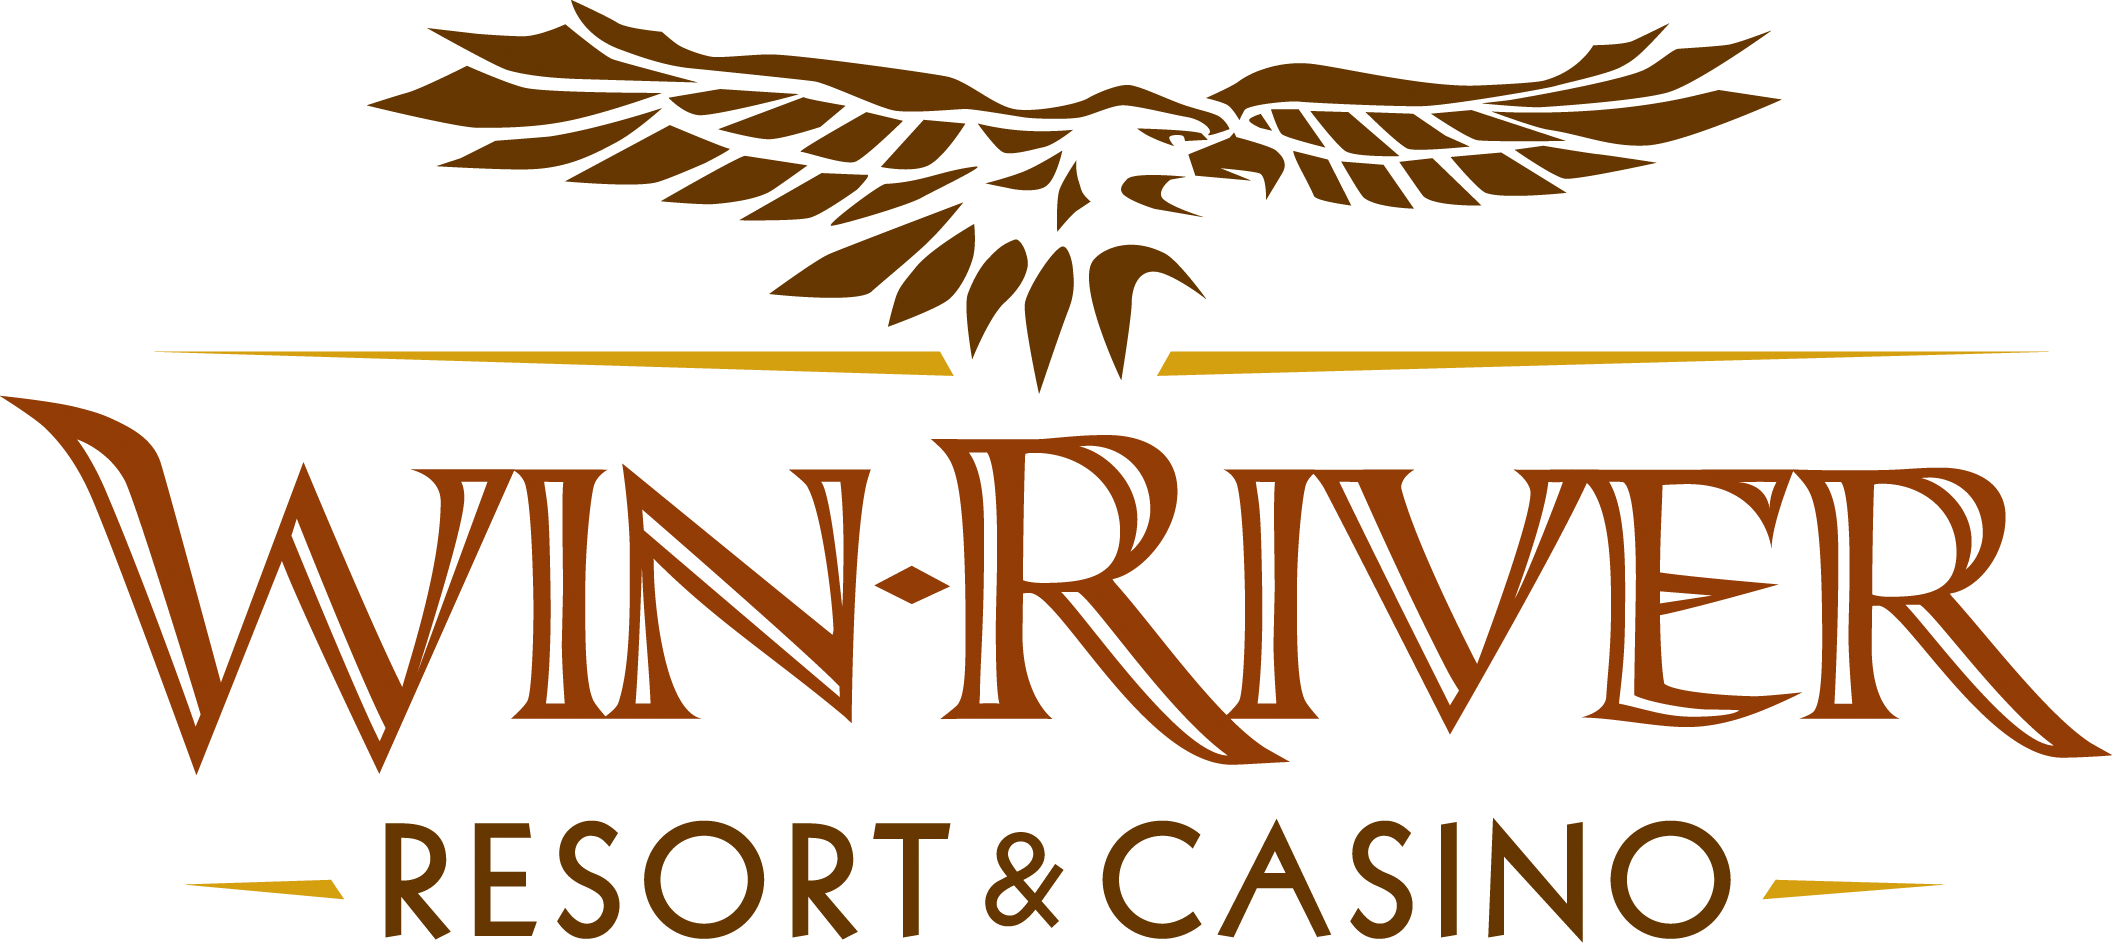 Win River Casino Redding California